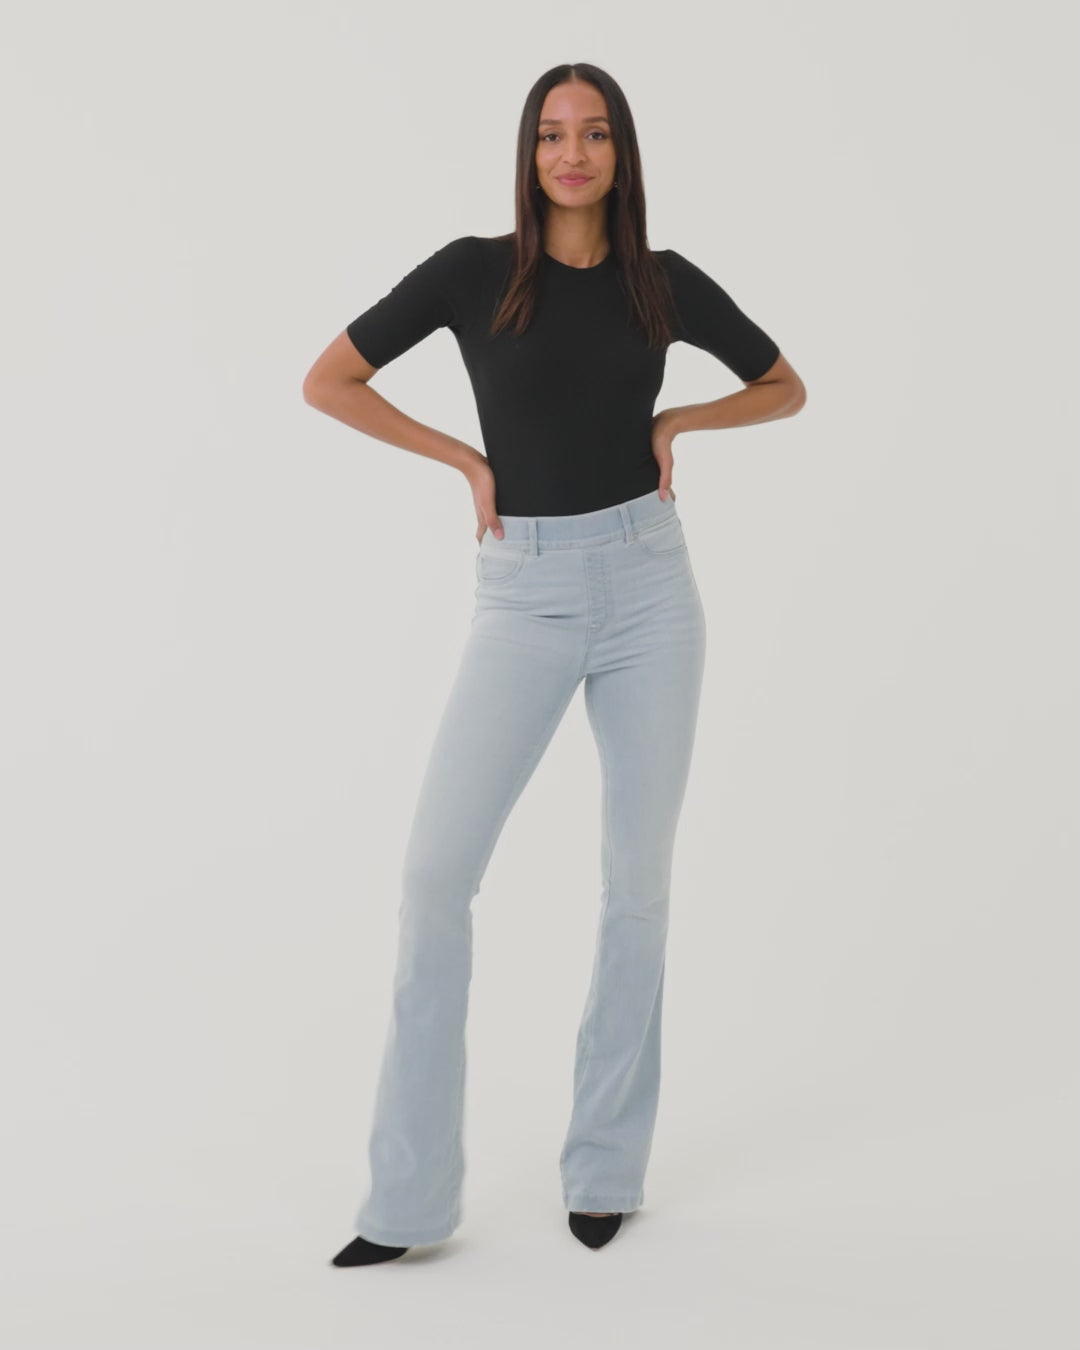 SPANX, Jeans, New Spanx Distressed Skinny Jeans Size Medium M Raw Hem  Medium Blue Wash 2203r